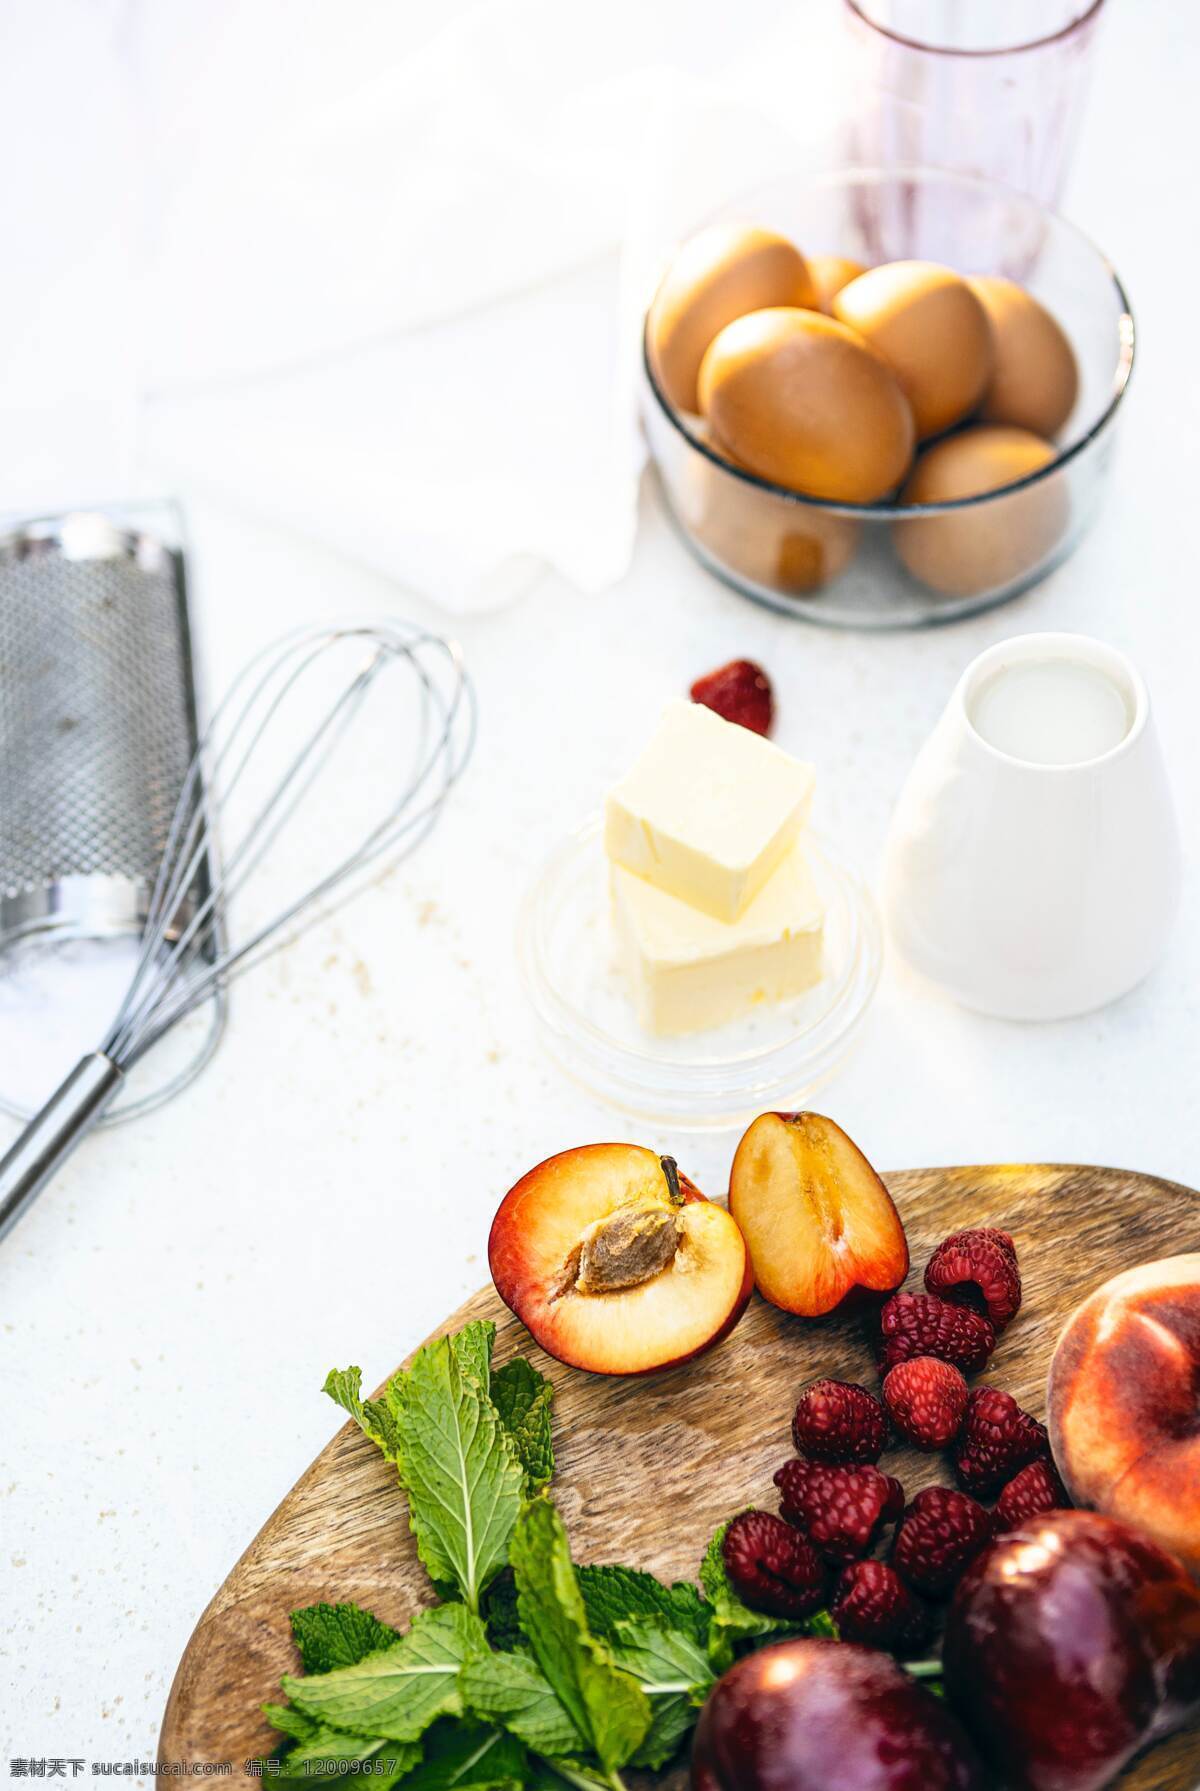 健康 水果 早餐 苹果 厨房 西餐 生活百科 生活素材